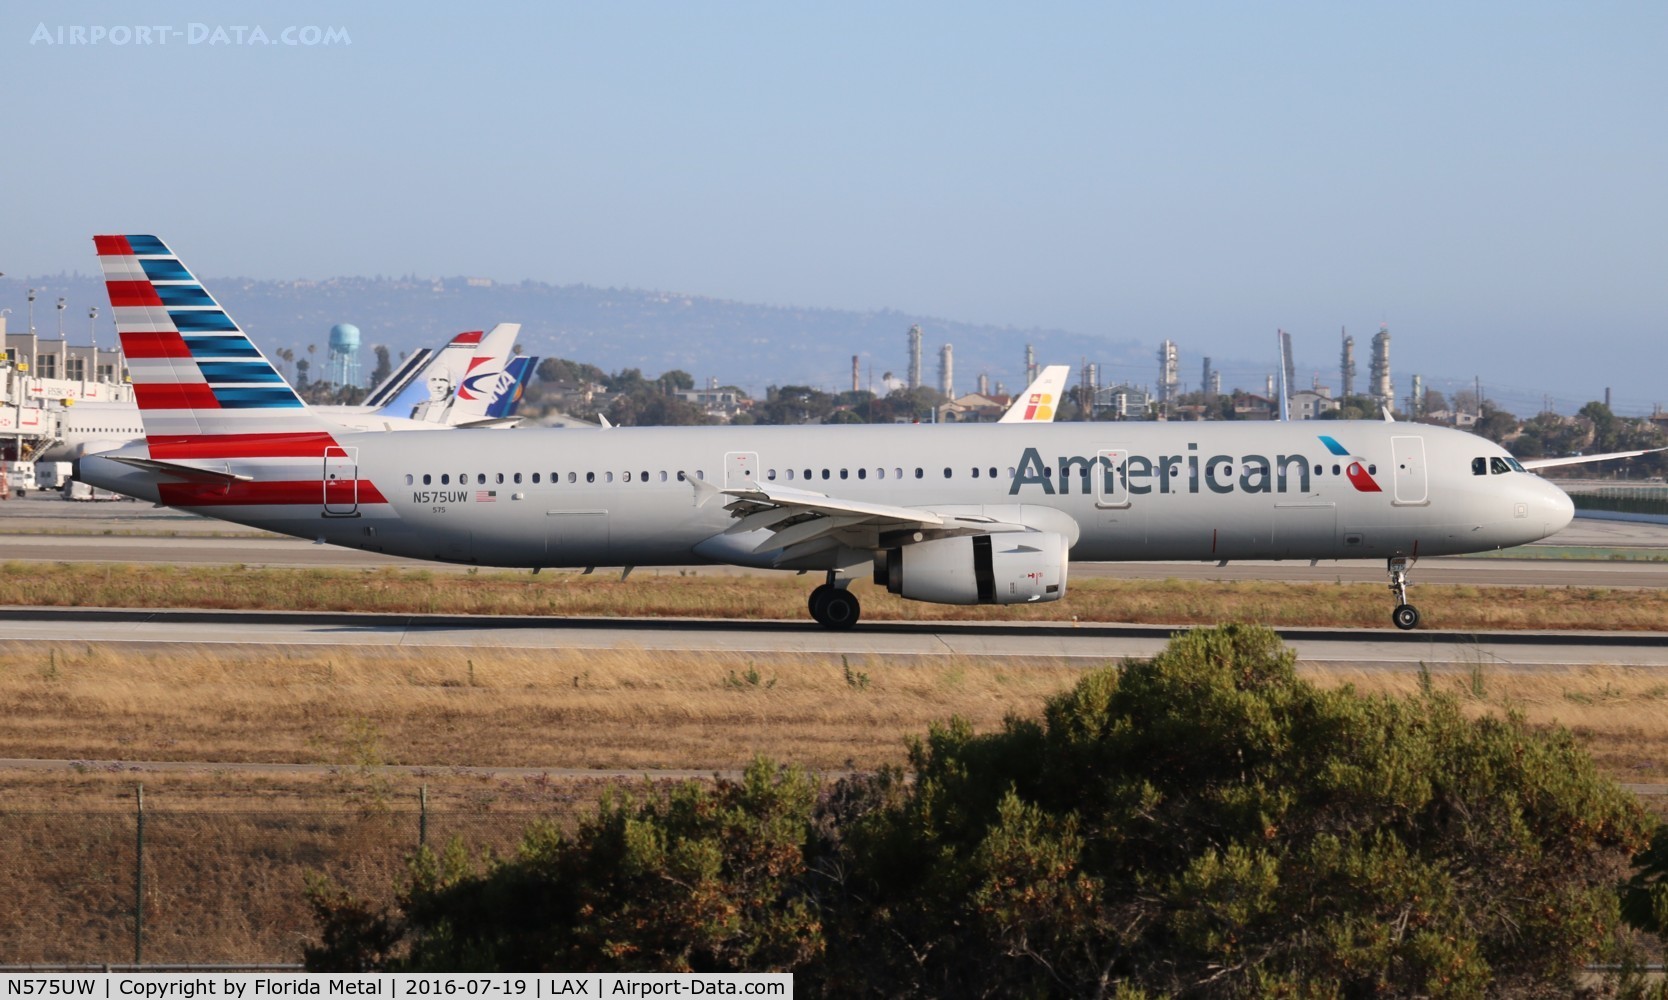 N575UW, 2014 Airbus A321-231 C/N 5980, American